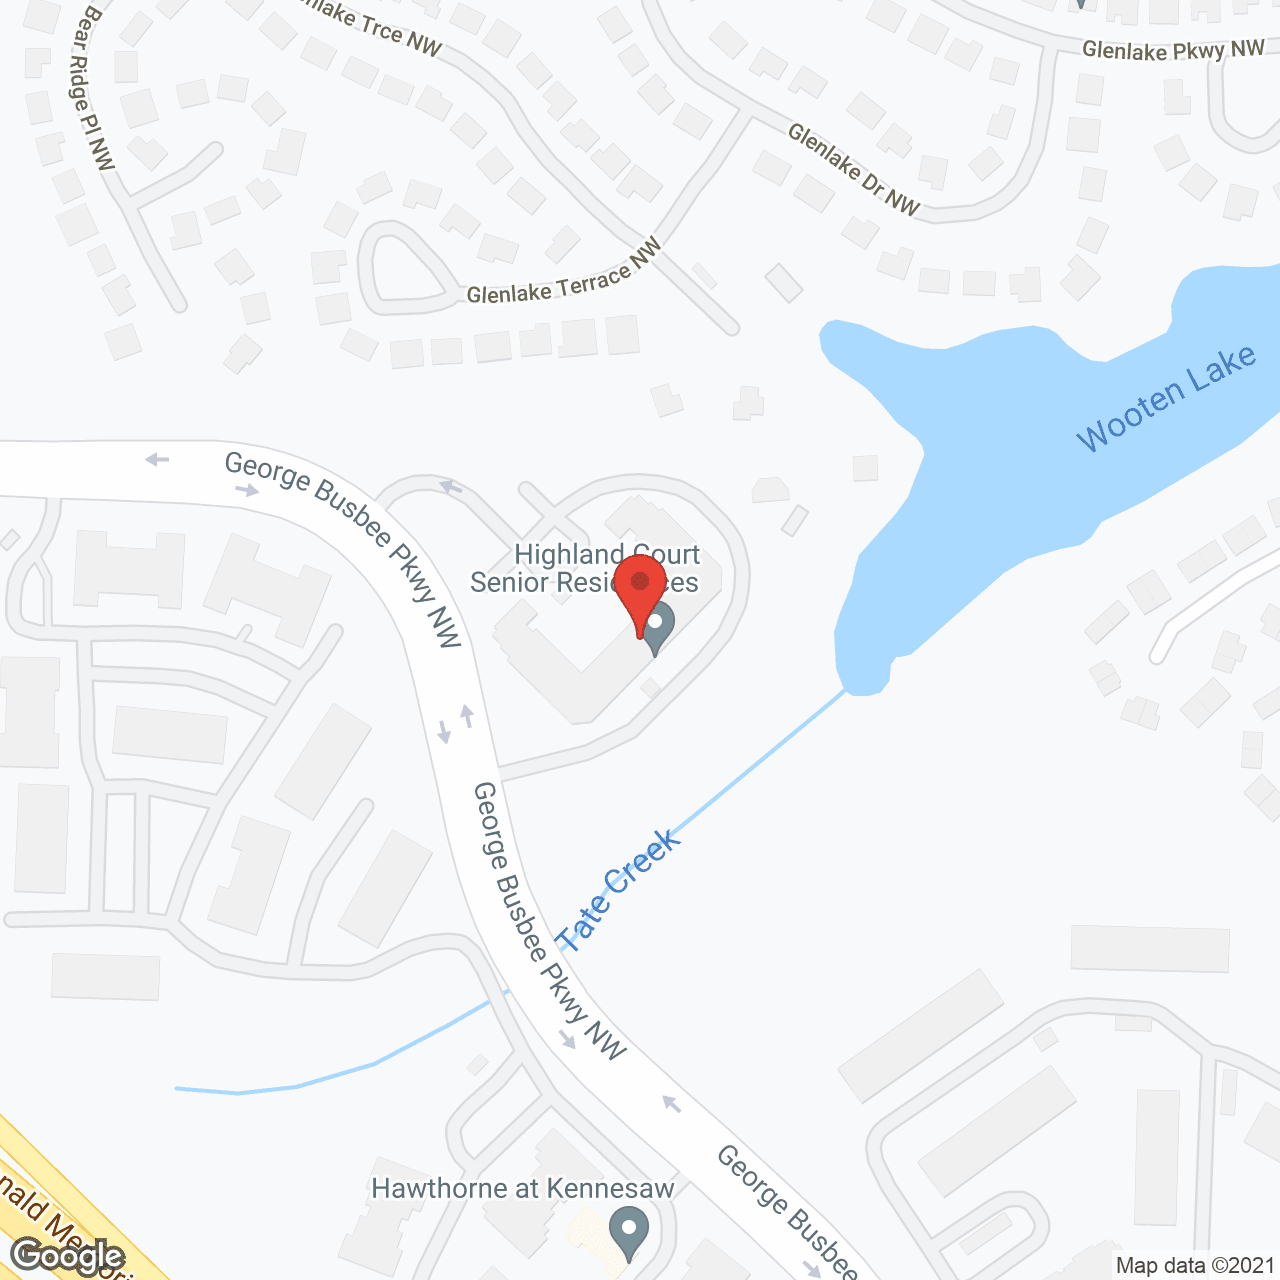 Highland Court Senior Residence in google map